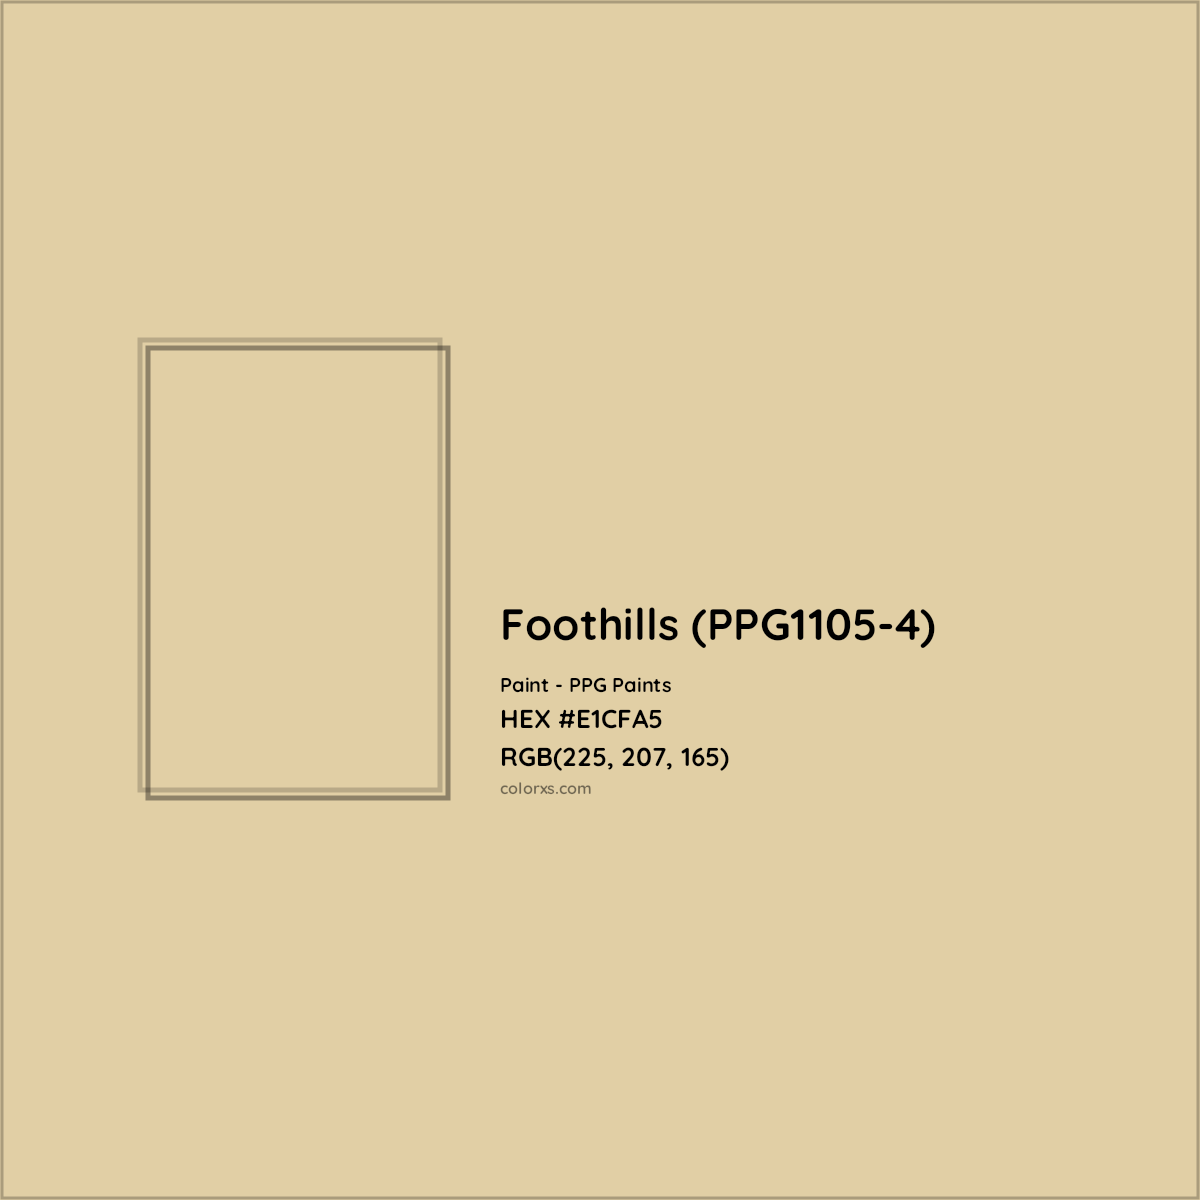 HEX #E1CFA5 Foothills (PPG1105-4) Paint PPG Paints - Color Code